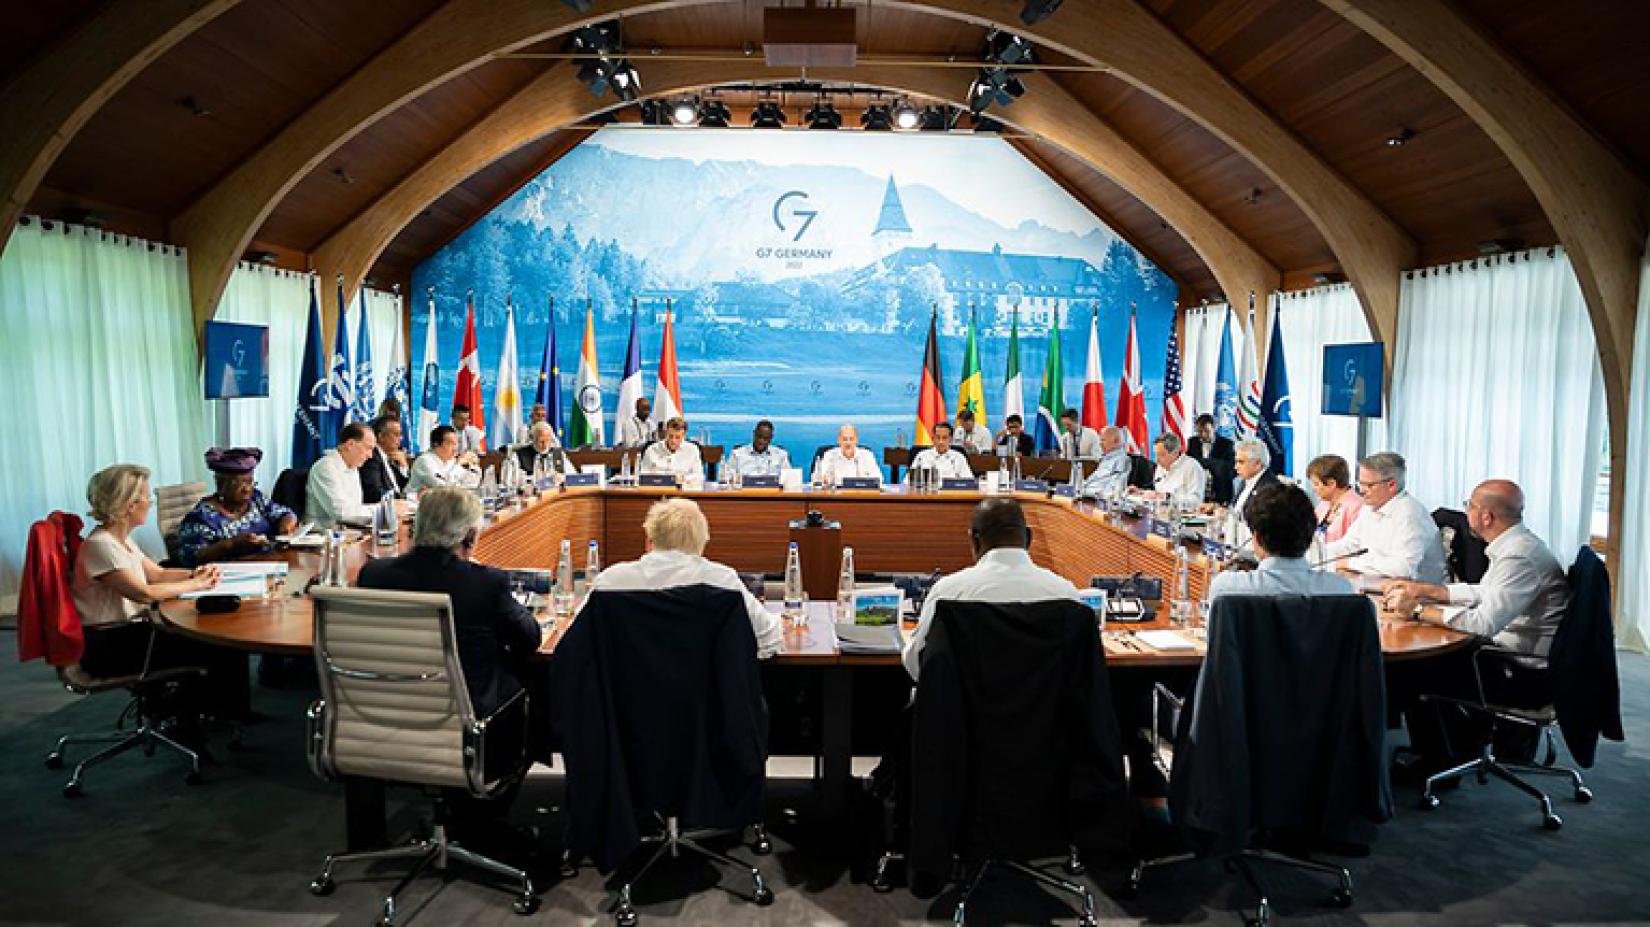 Novos compromissos dos líderes do G7, abrangendo igualdade de gênero, combate à inflação, mudança climática e apoio a uma transição justa para um futuro sustentável e inclusivo, foram bem recebidos pela OIT.